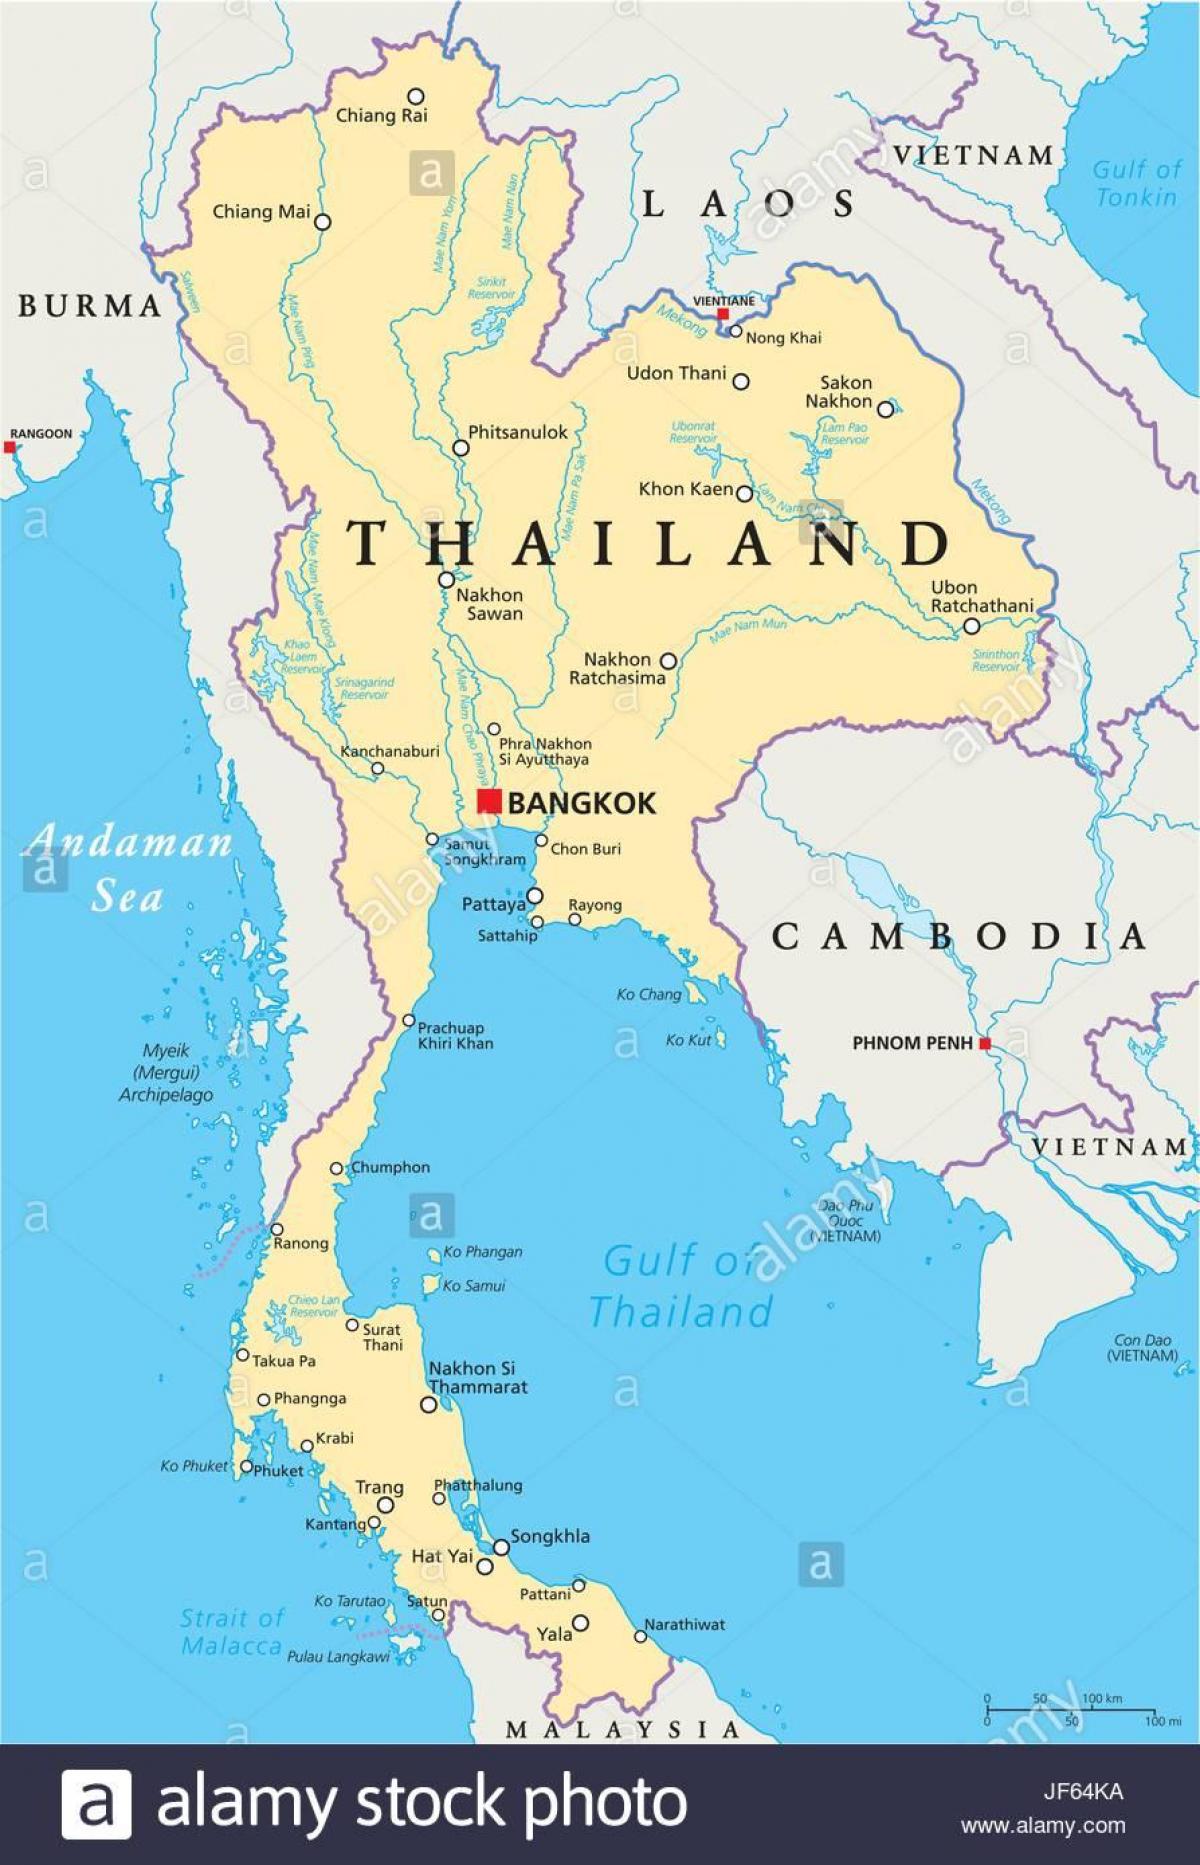 bangkok sa isang mapa ng mundo